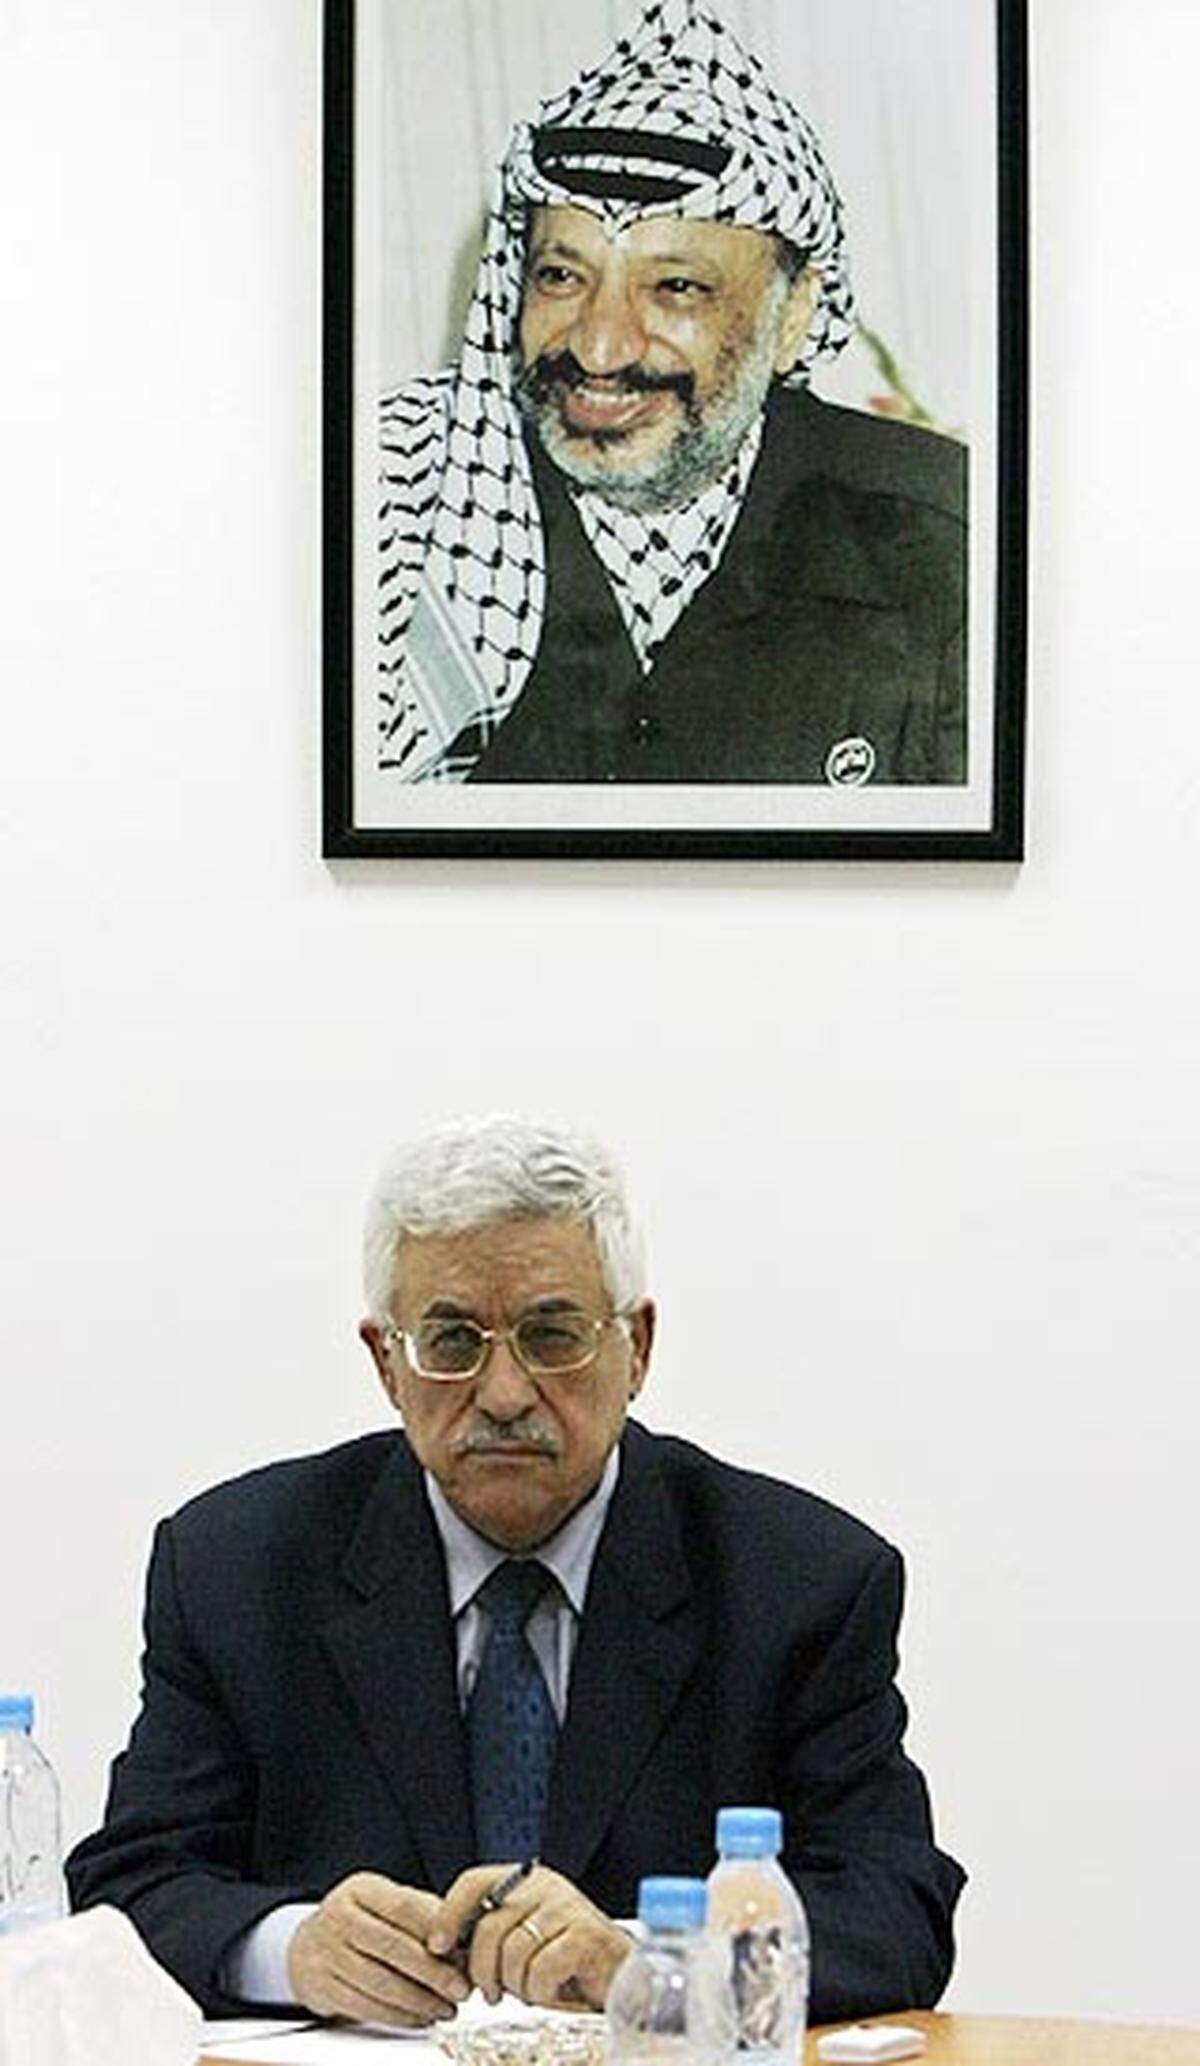 Abbas wird nach Arafats Tod palästinensischer Präsident. In seiner Antrittsrede reicht er Israel "die Hand zum Frieden".  - Räumung der israelischen Siedlungen und Truppenrückzug aus dem Gaza-Streifen. USA setzen Rafah-Abkommen zur Grenzöffnung zwischen Gaza-Streifen und Ägypten mit EU-Beobachtern durch.